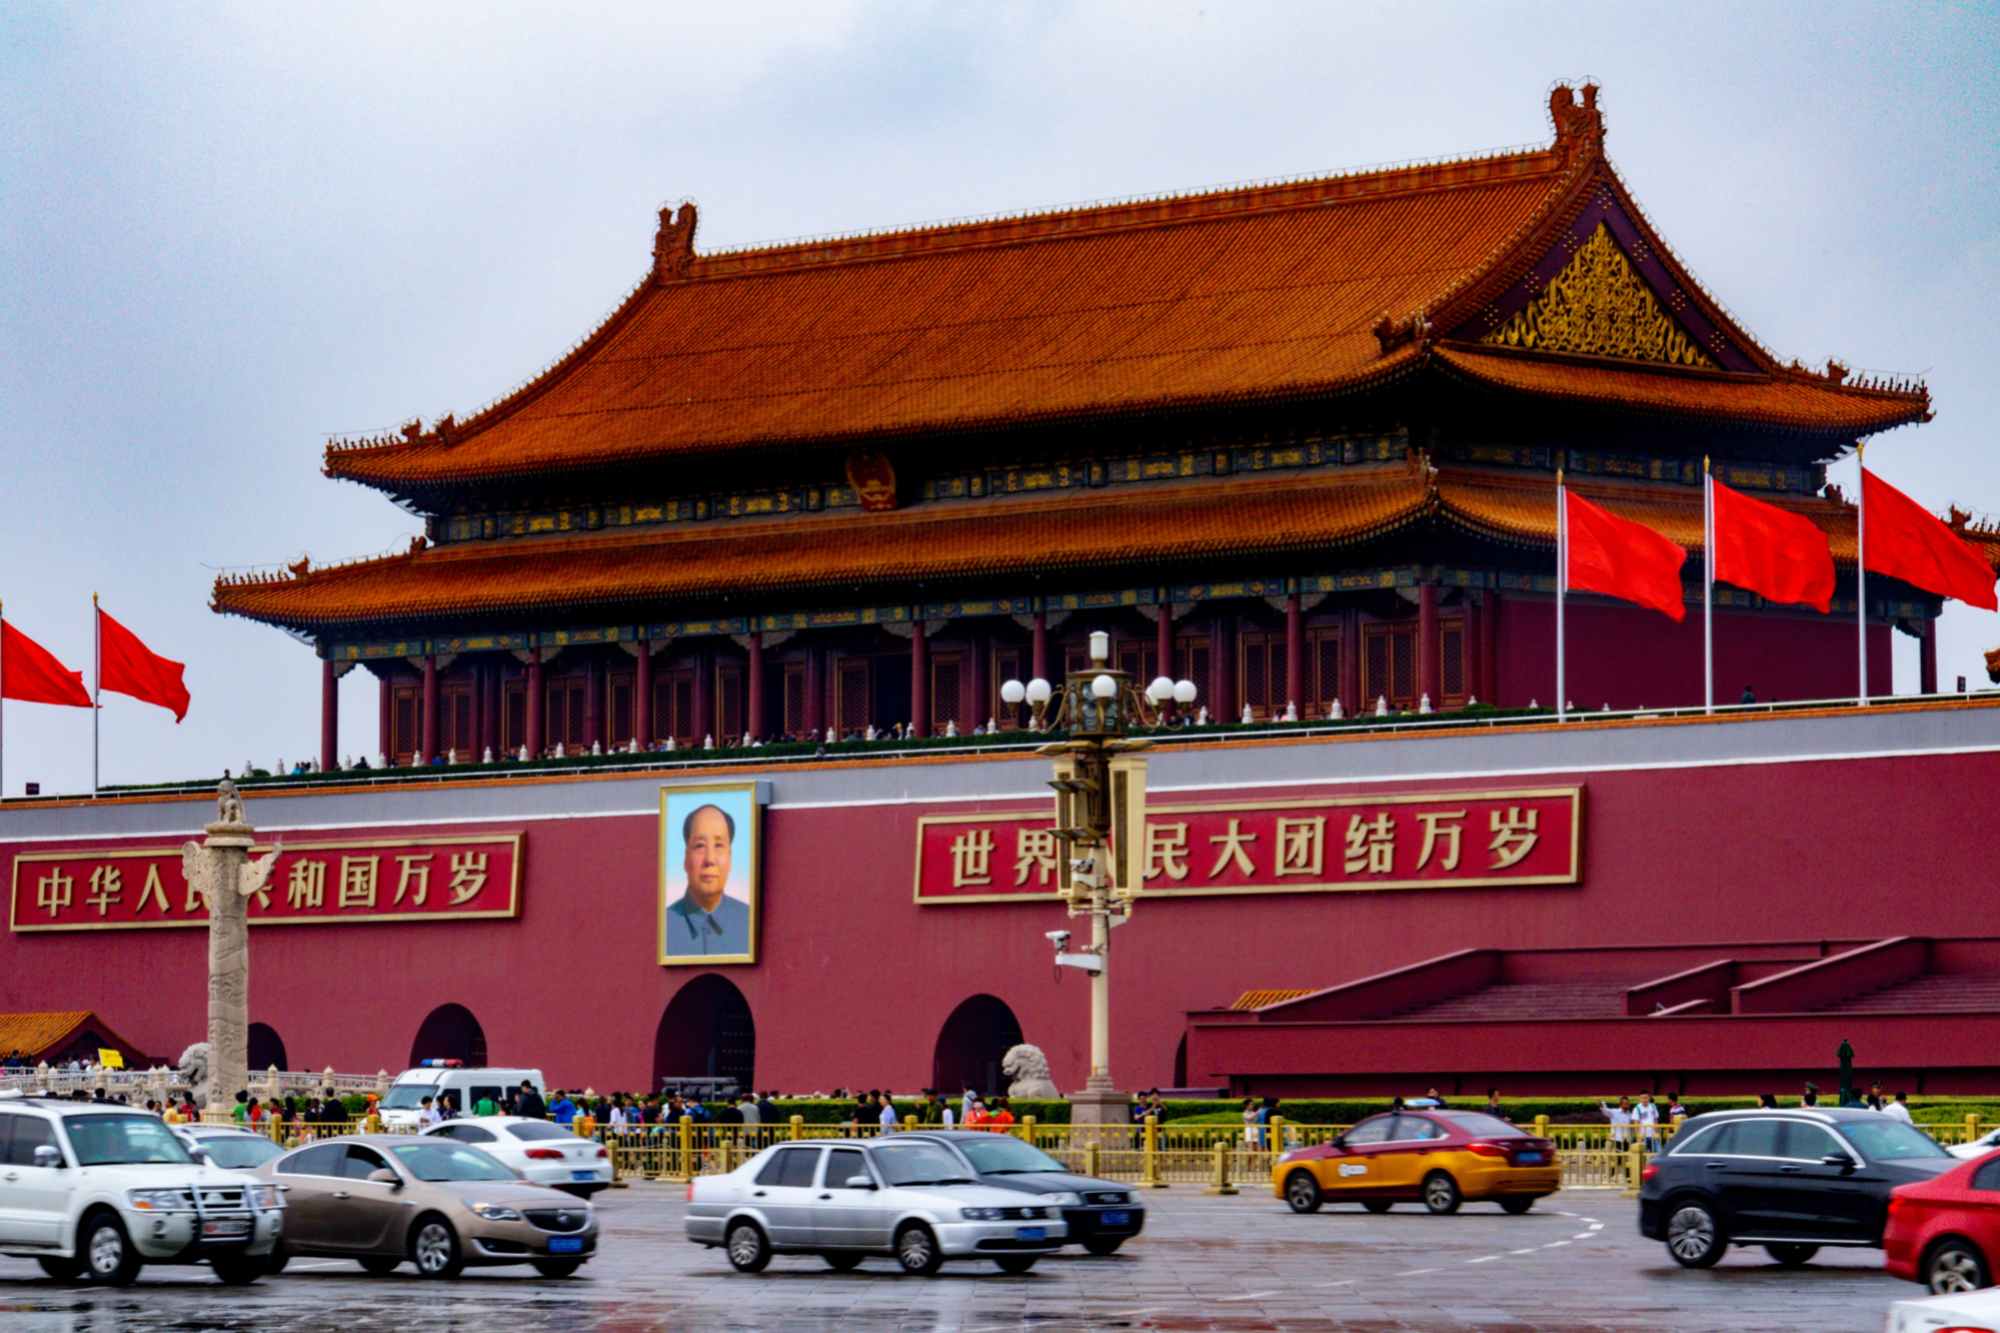 Tiananmen Tour